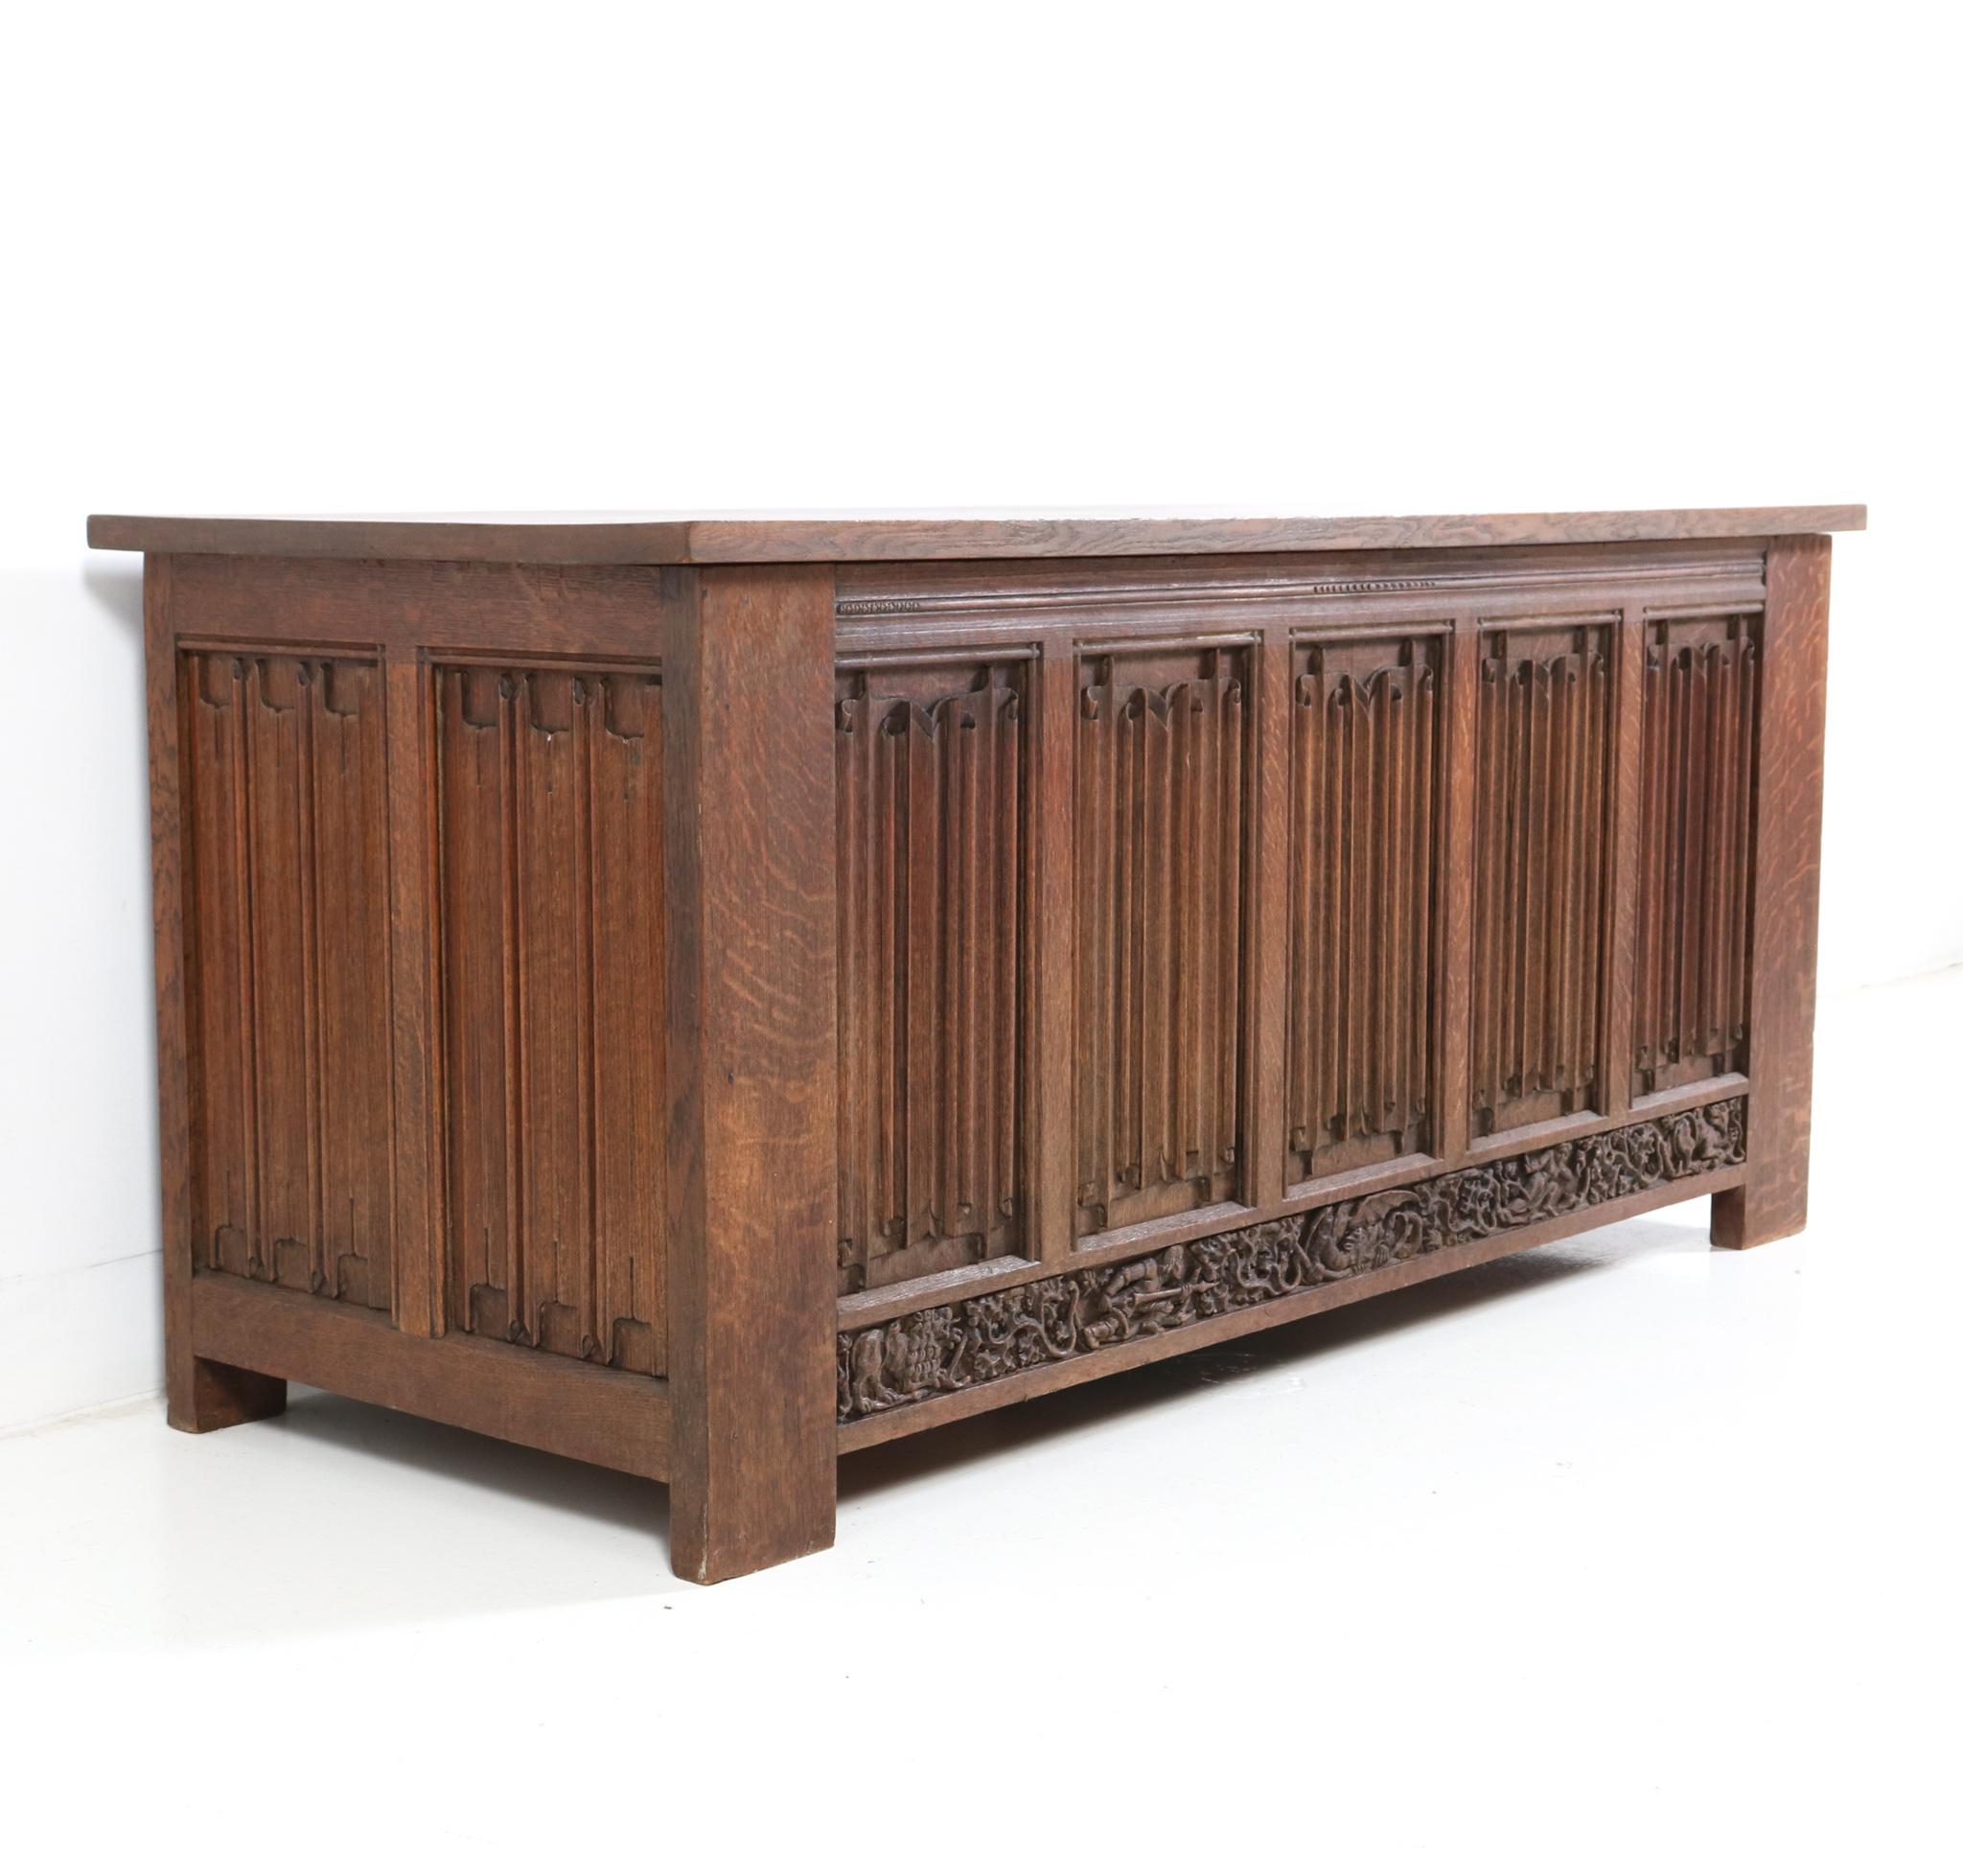  Gothic Revival Hand-Carved Oak Pedestal Desk, 1900s For Sale 5